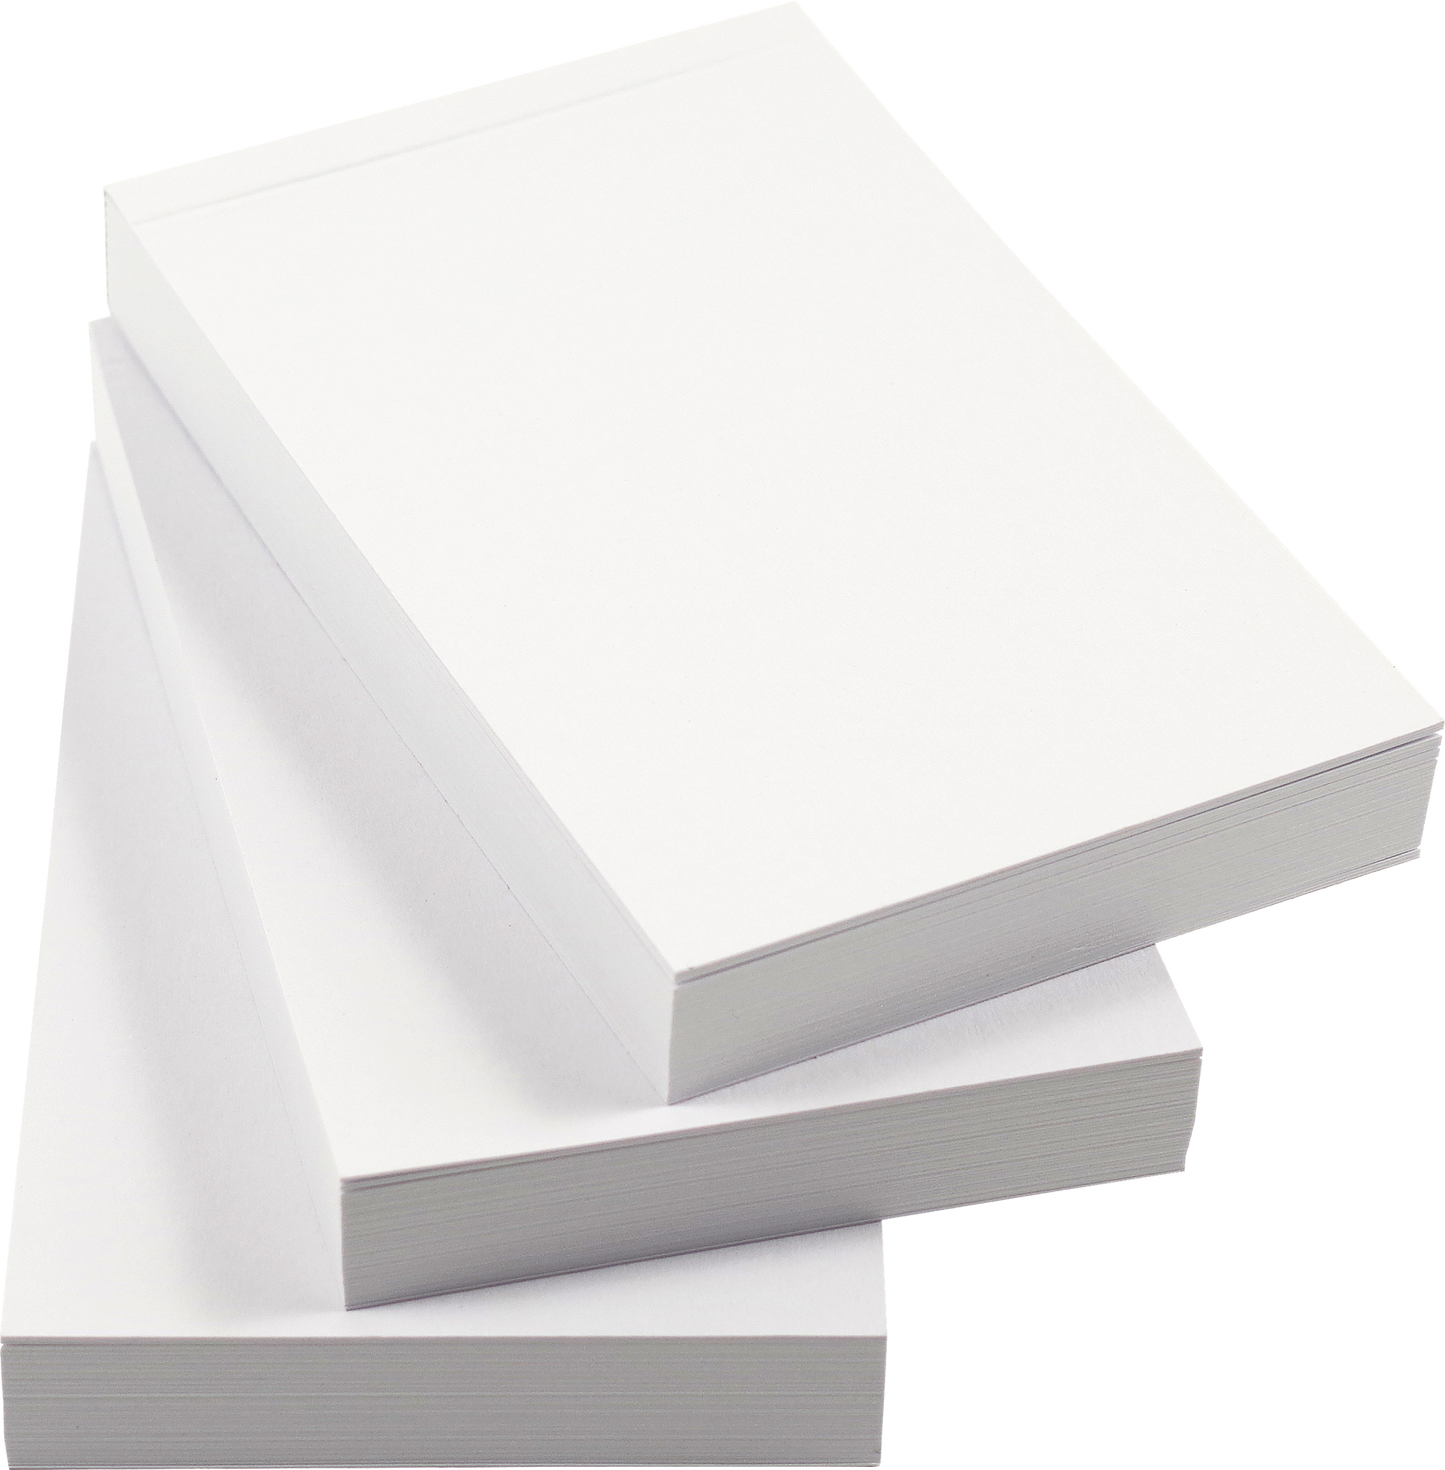 Set of 3 Blank Flipbooks